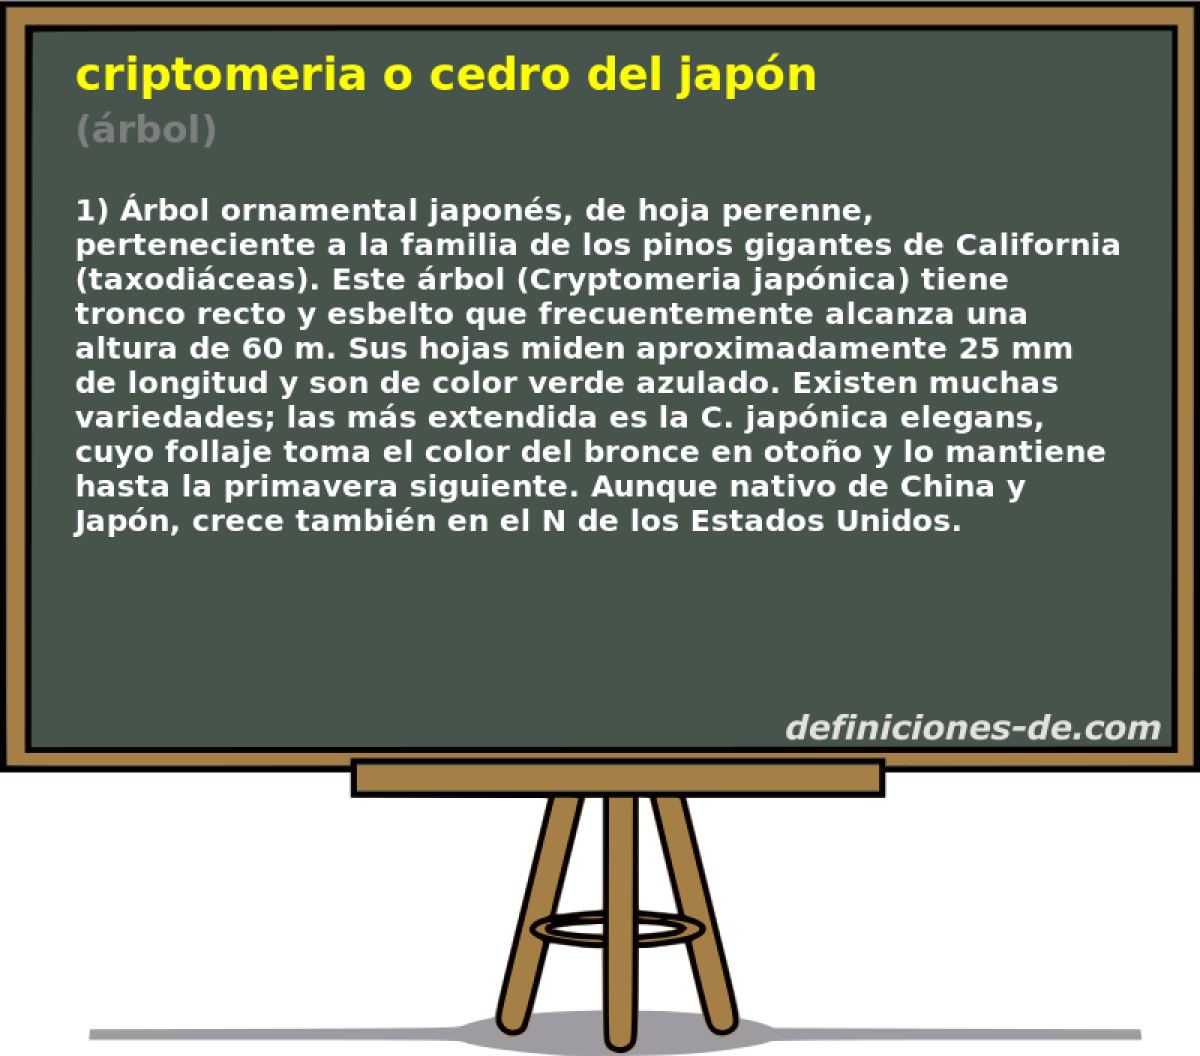 criptomeria o cedro del japn (rbol)